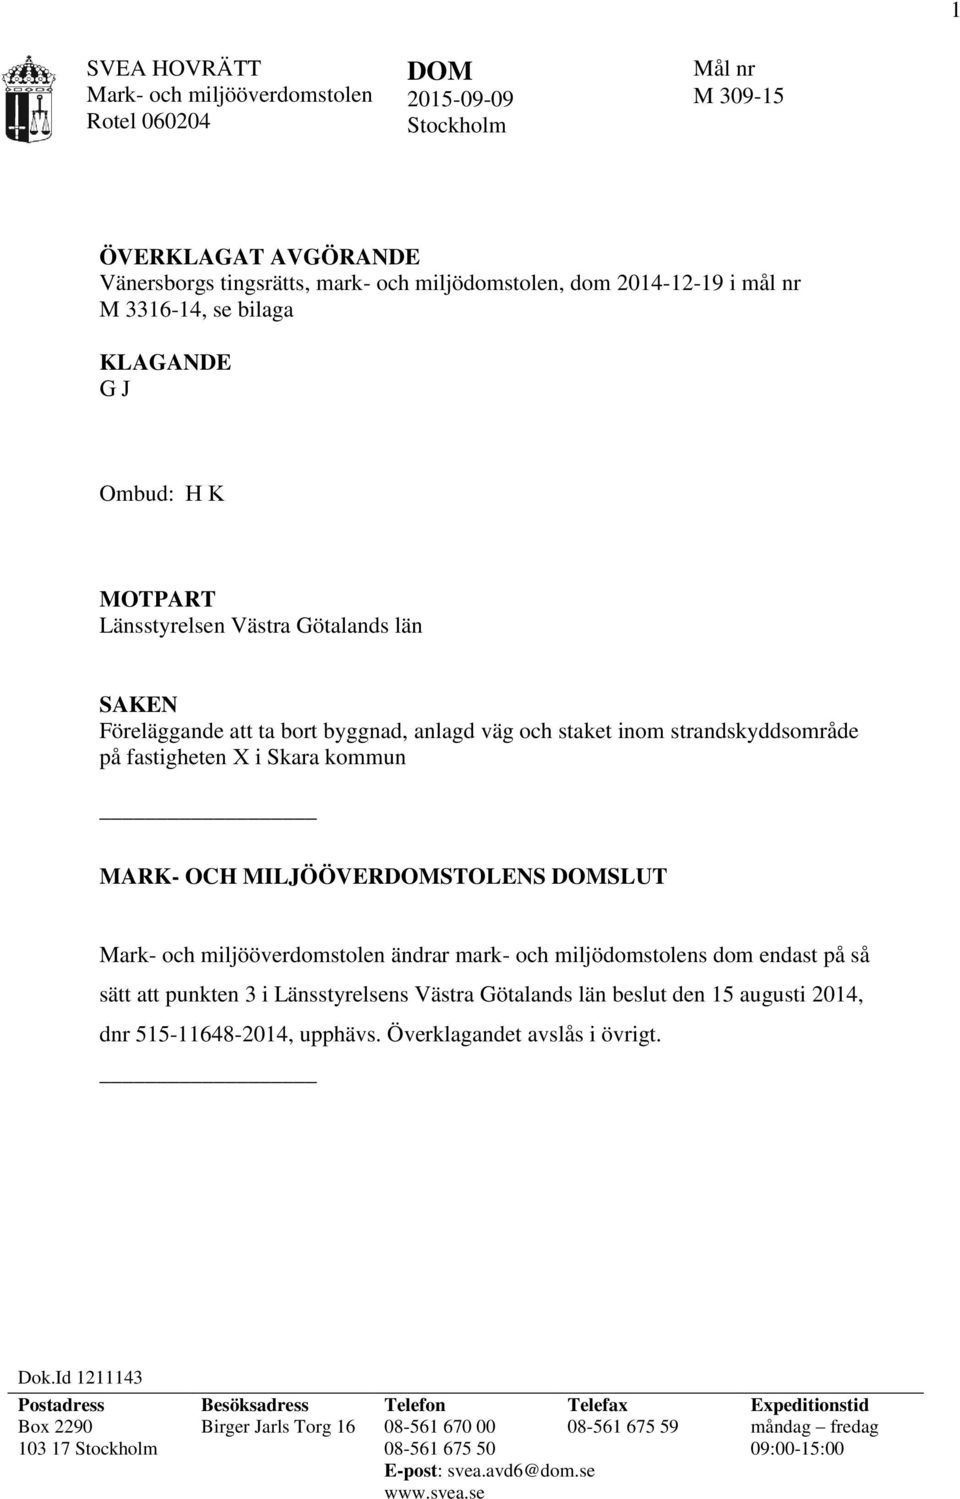 MILJÖÖVERDOMSTOLENS DOMSLUT ändrar mark- och miljödomstolens dom endast på så sätt att punkten 3 i Länsstyrelsens Västra Götalands län beslut den 15 augusti 2014, dnr 515-11648-2014, upphävs.